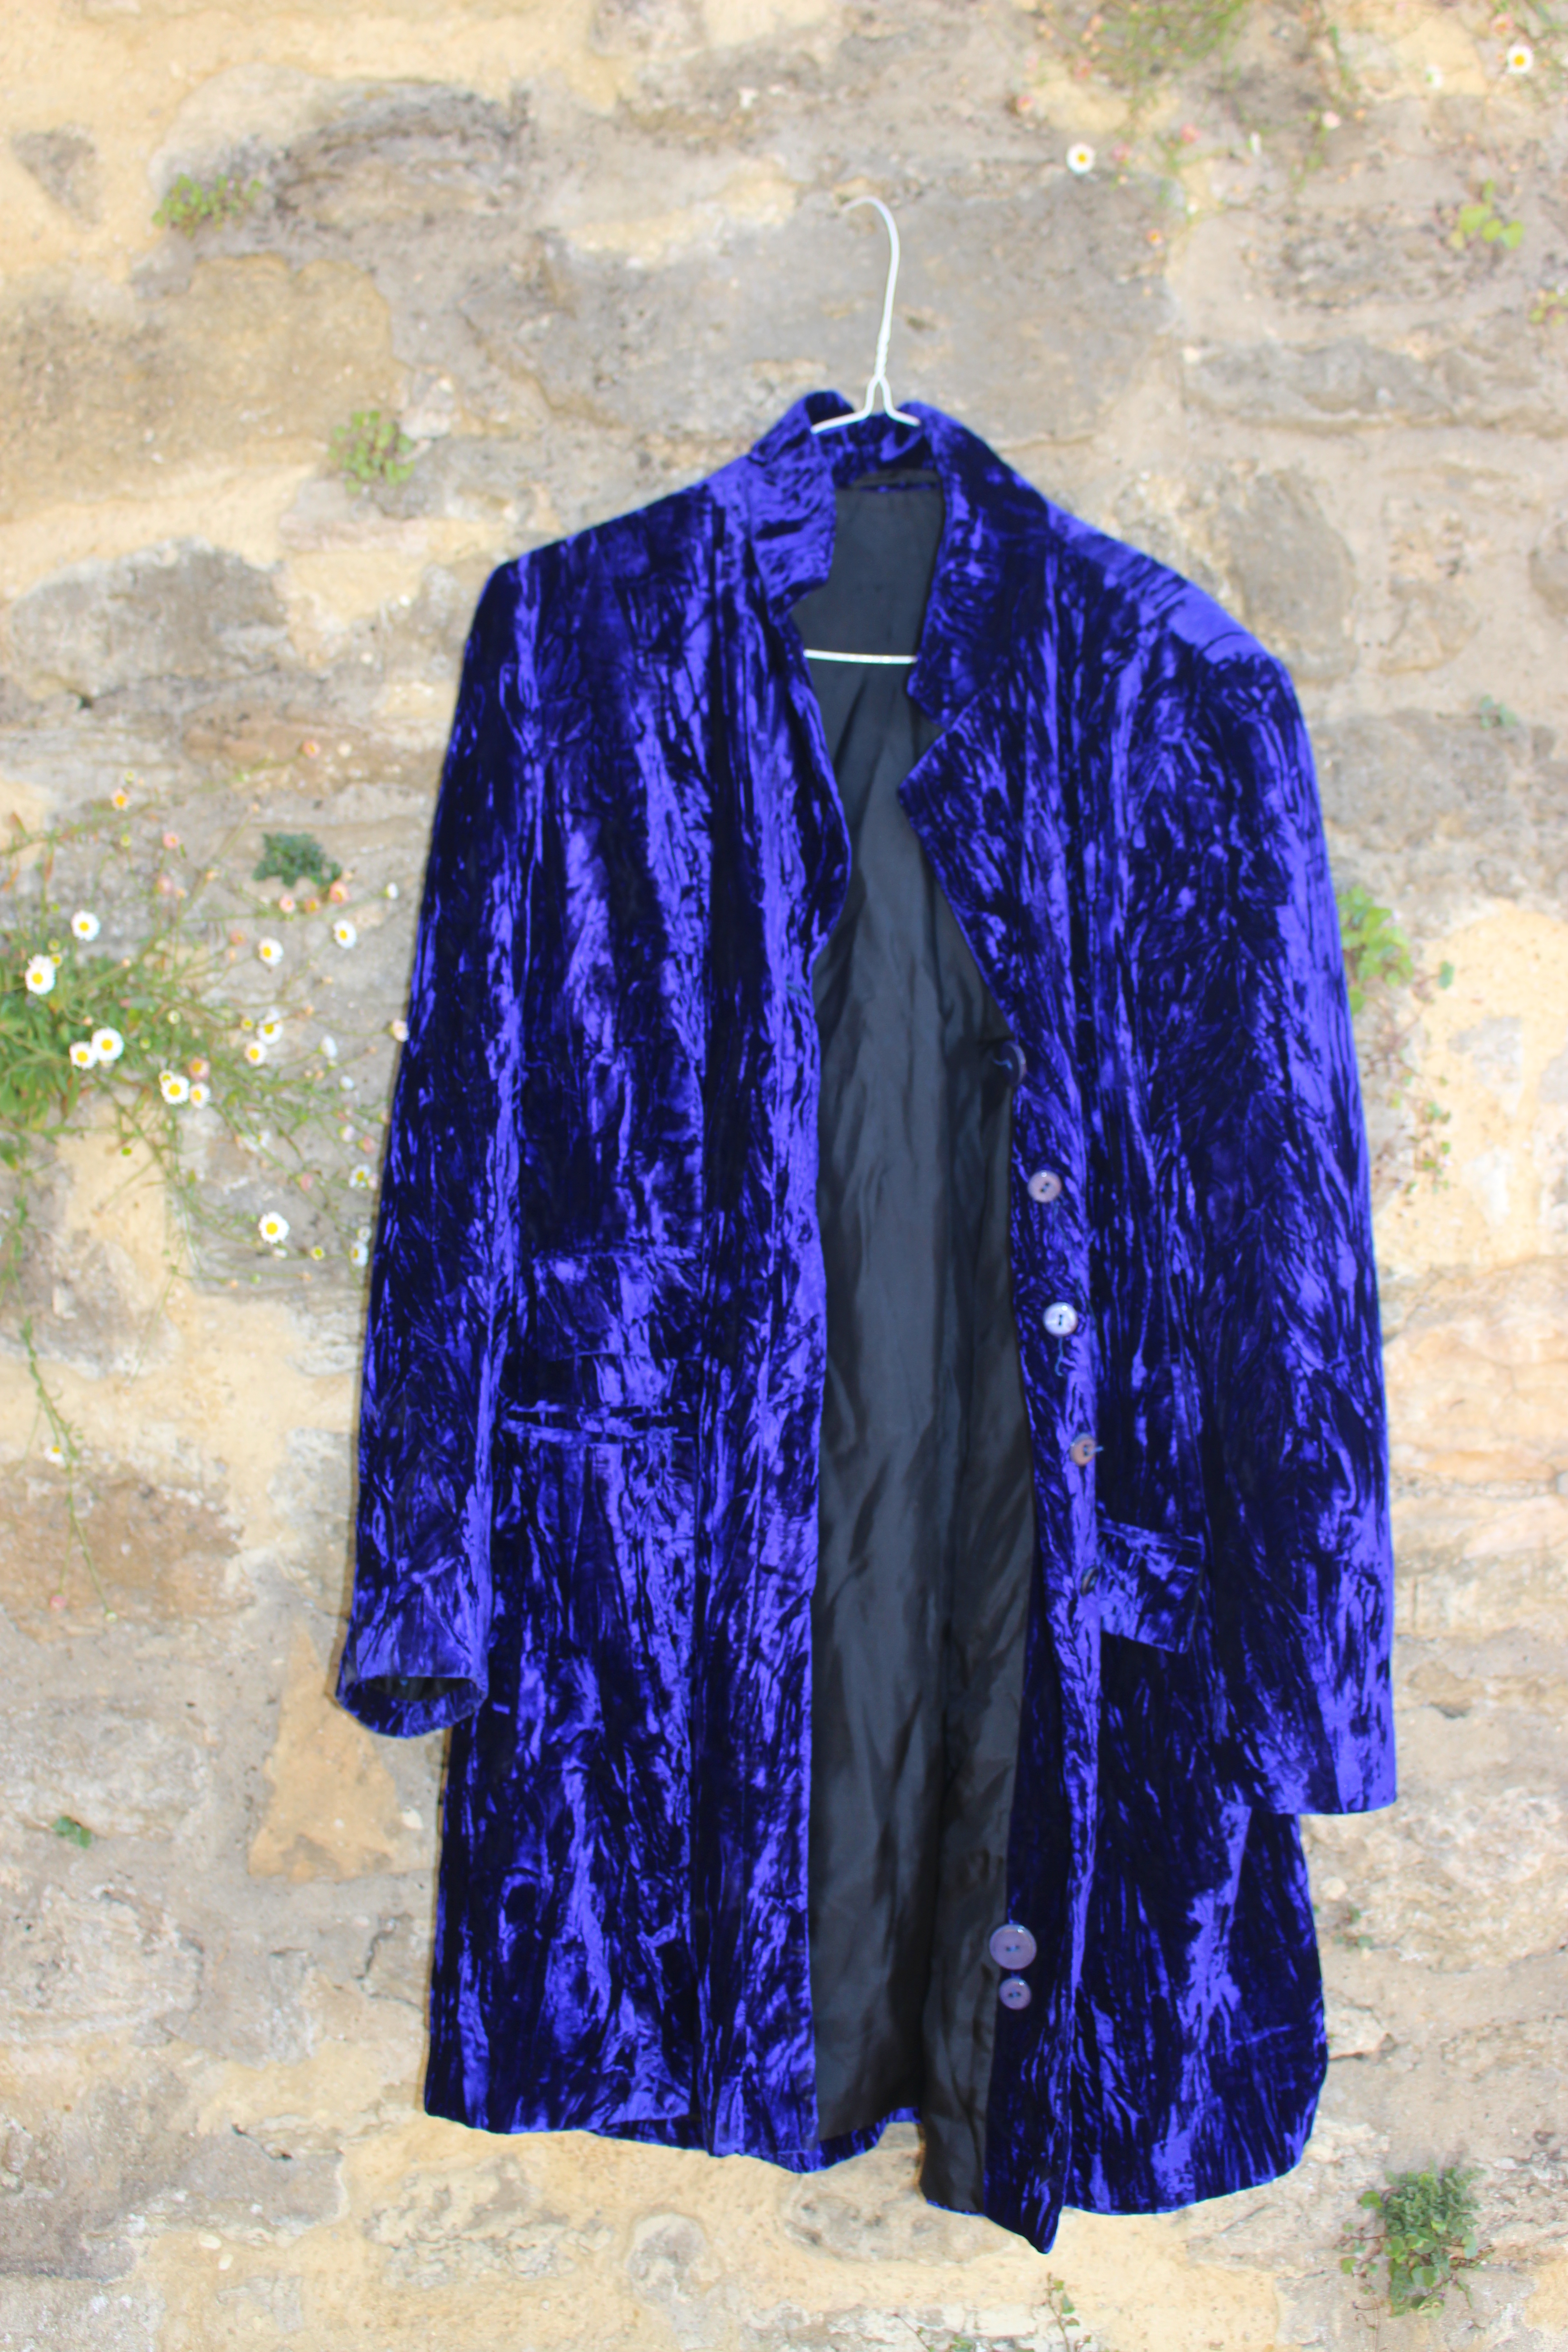 Bright indigo coat